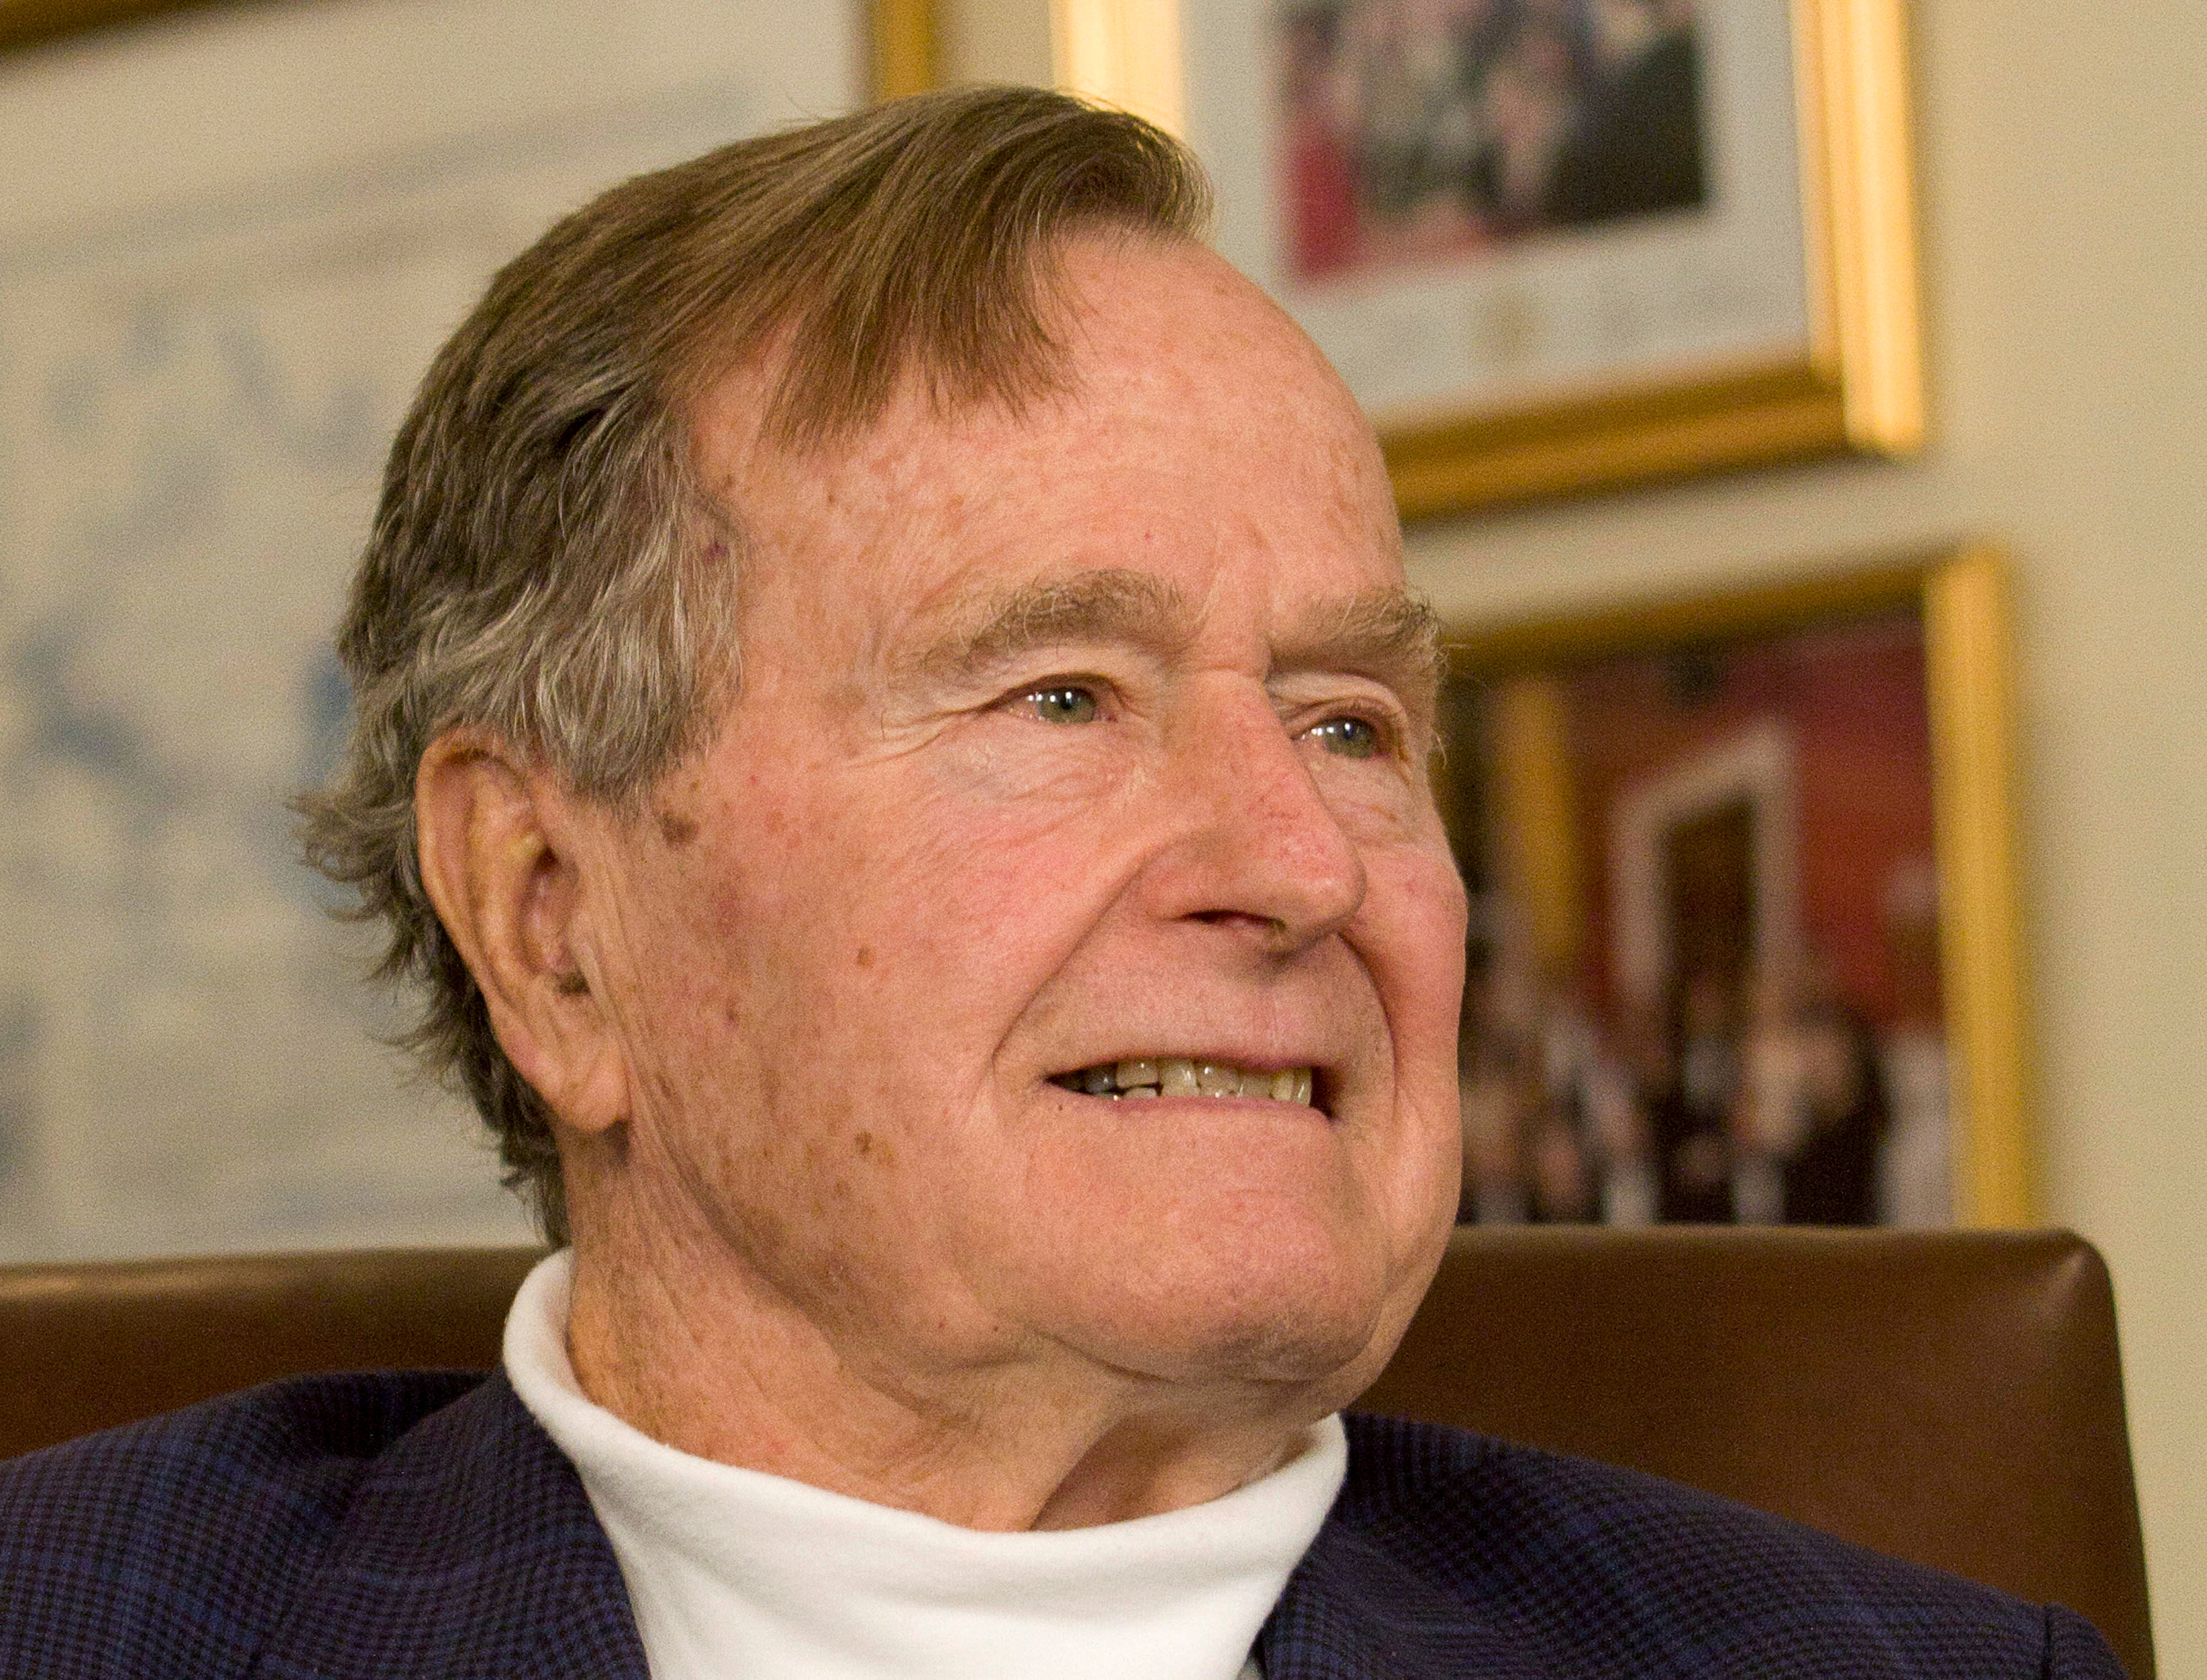 Former U.S. President George H.W. Bush dead at 94